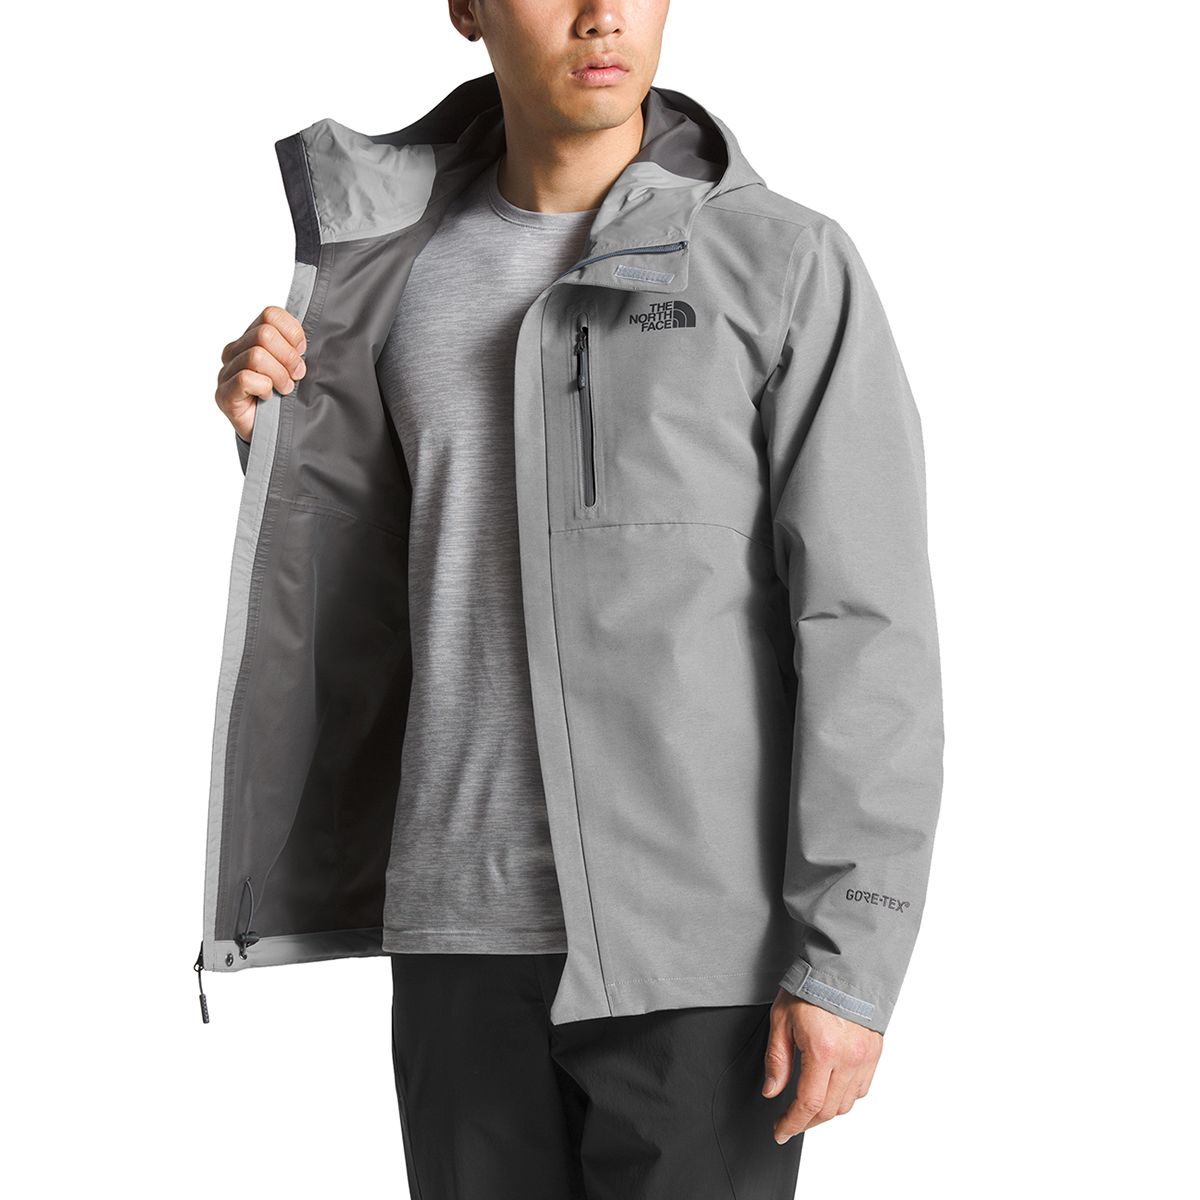 Plantkunde Zeg opzij Leed The North Face Dryzzle Hooded Jacket - Men's - Clothing